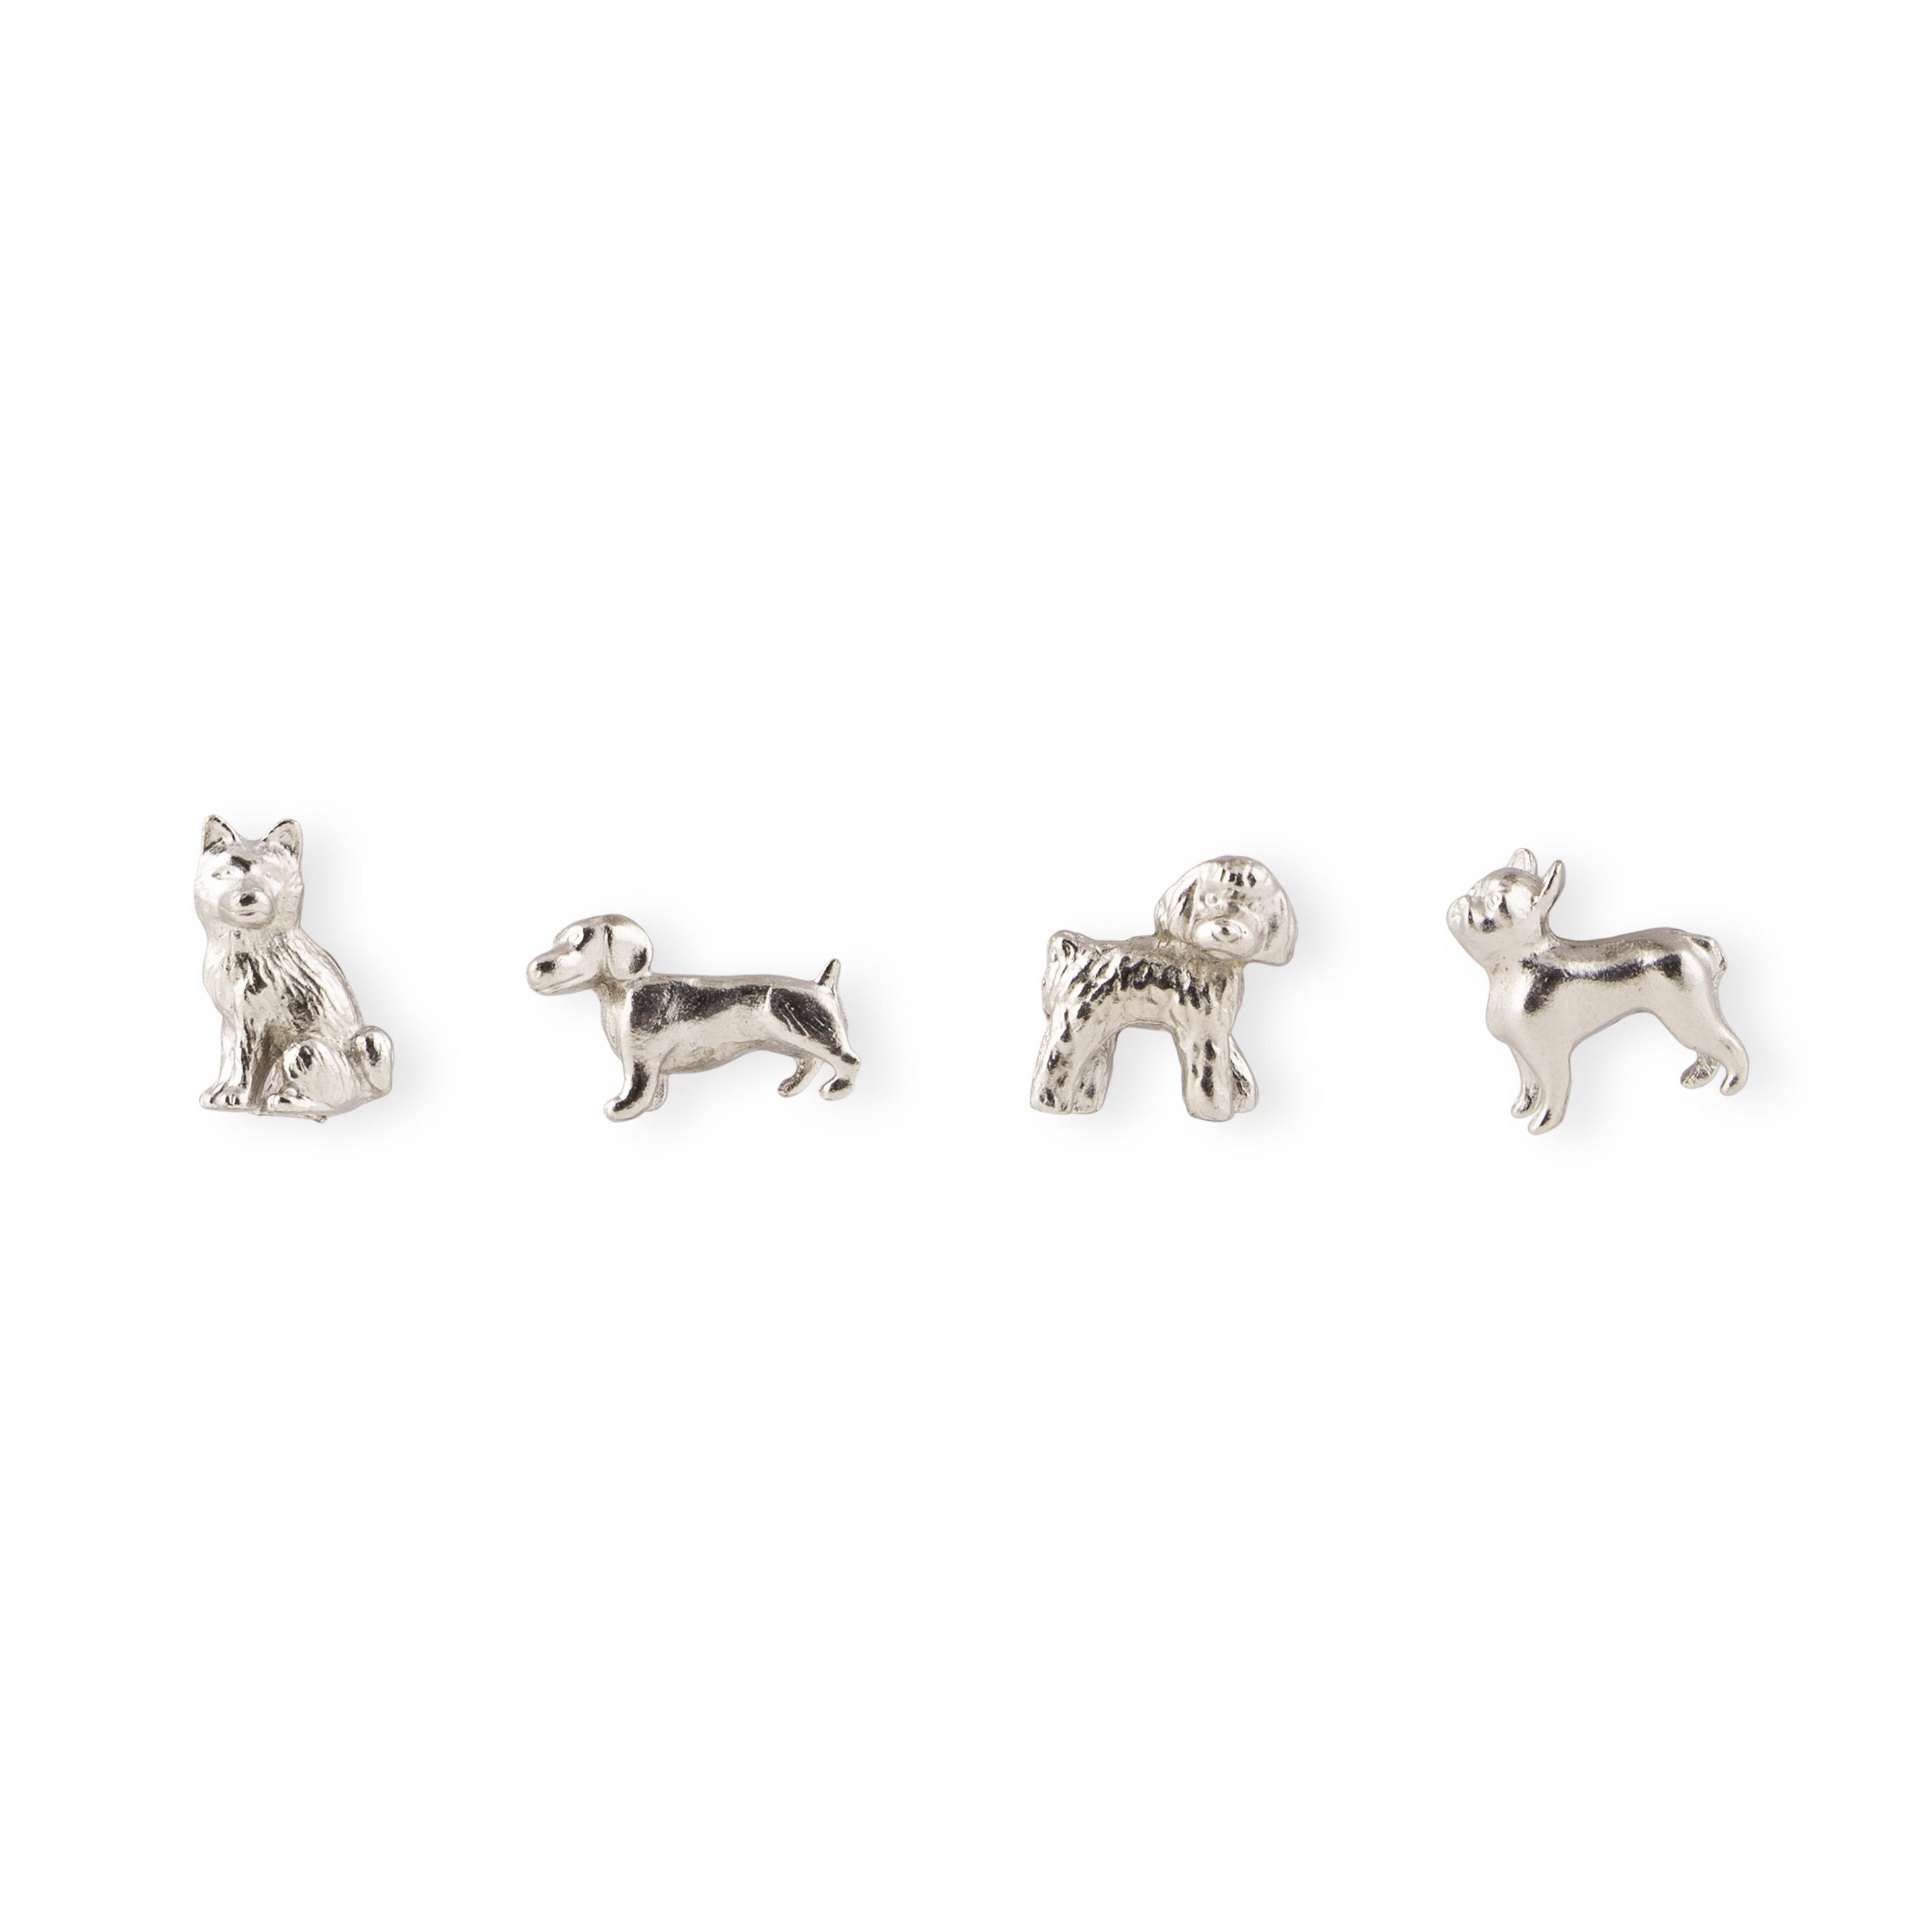 cast metal dog magnets